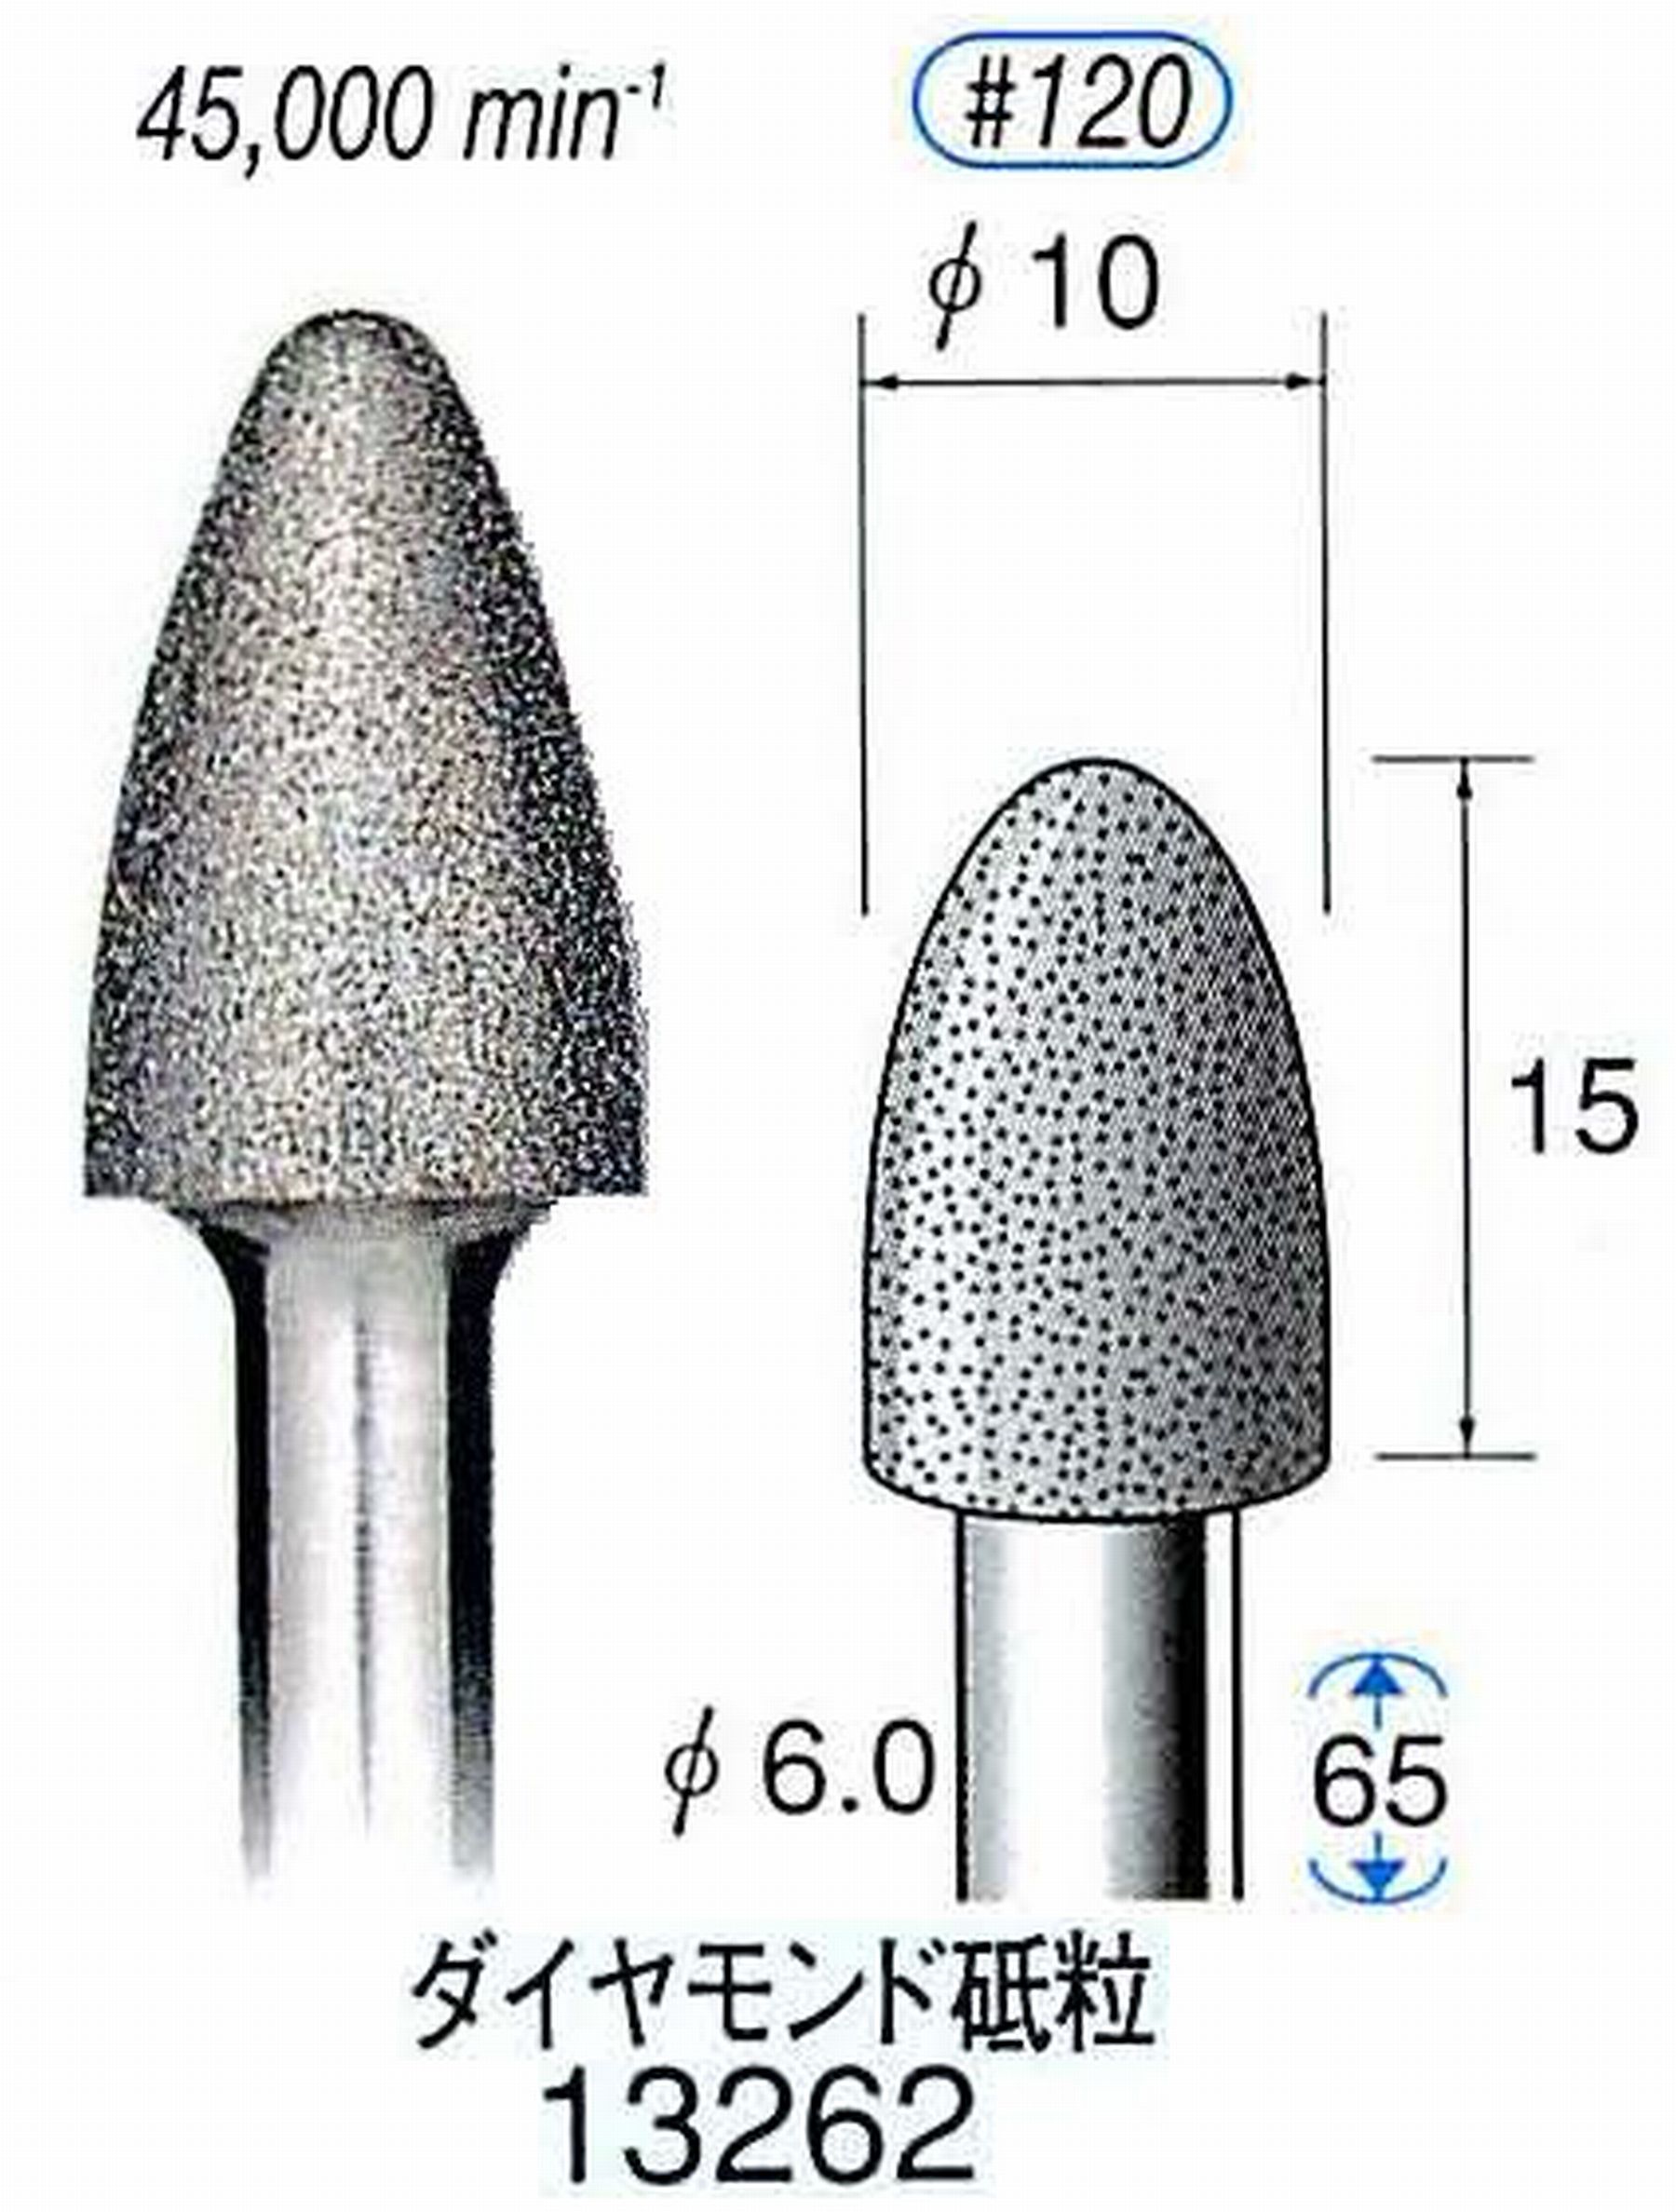 ナカニシ/NAKANISHI 電着ダイヤモンド ダイヤモンド砥粒 軸径(シャンク)φ6.0mm 13262